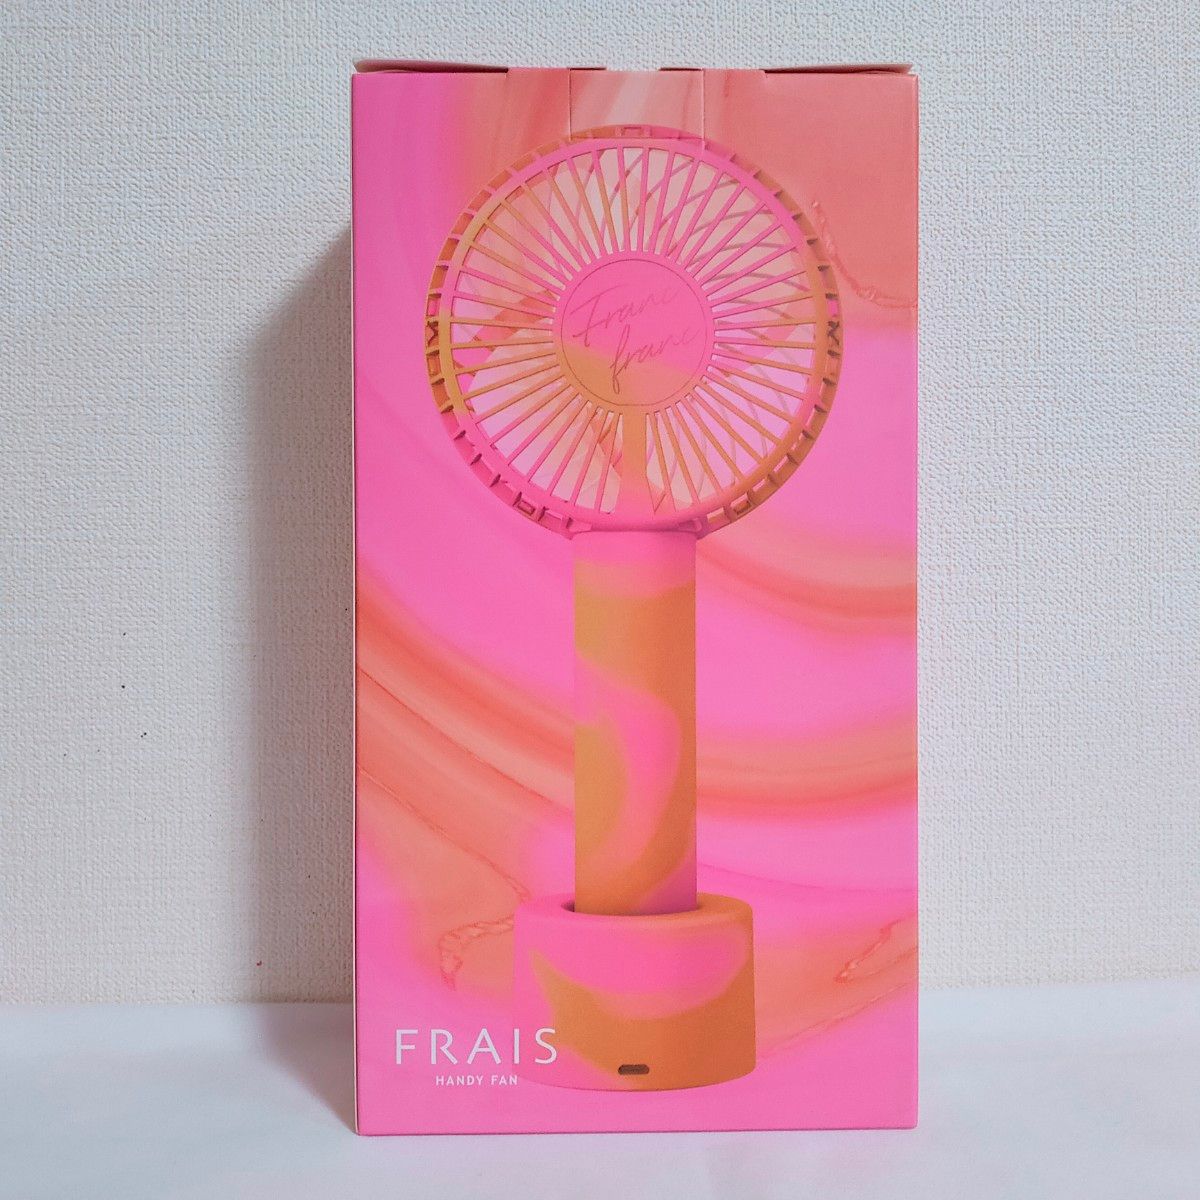 【送料無料】Francfranc フレ ハンディファン マーブル 扇風機 ピンク